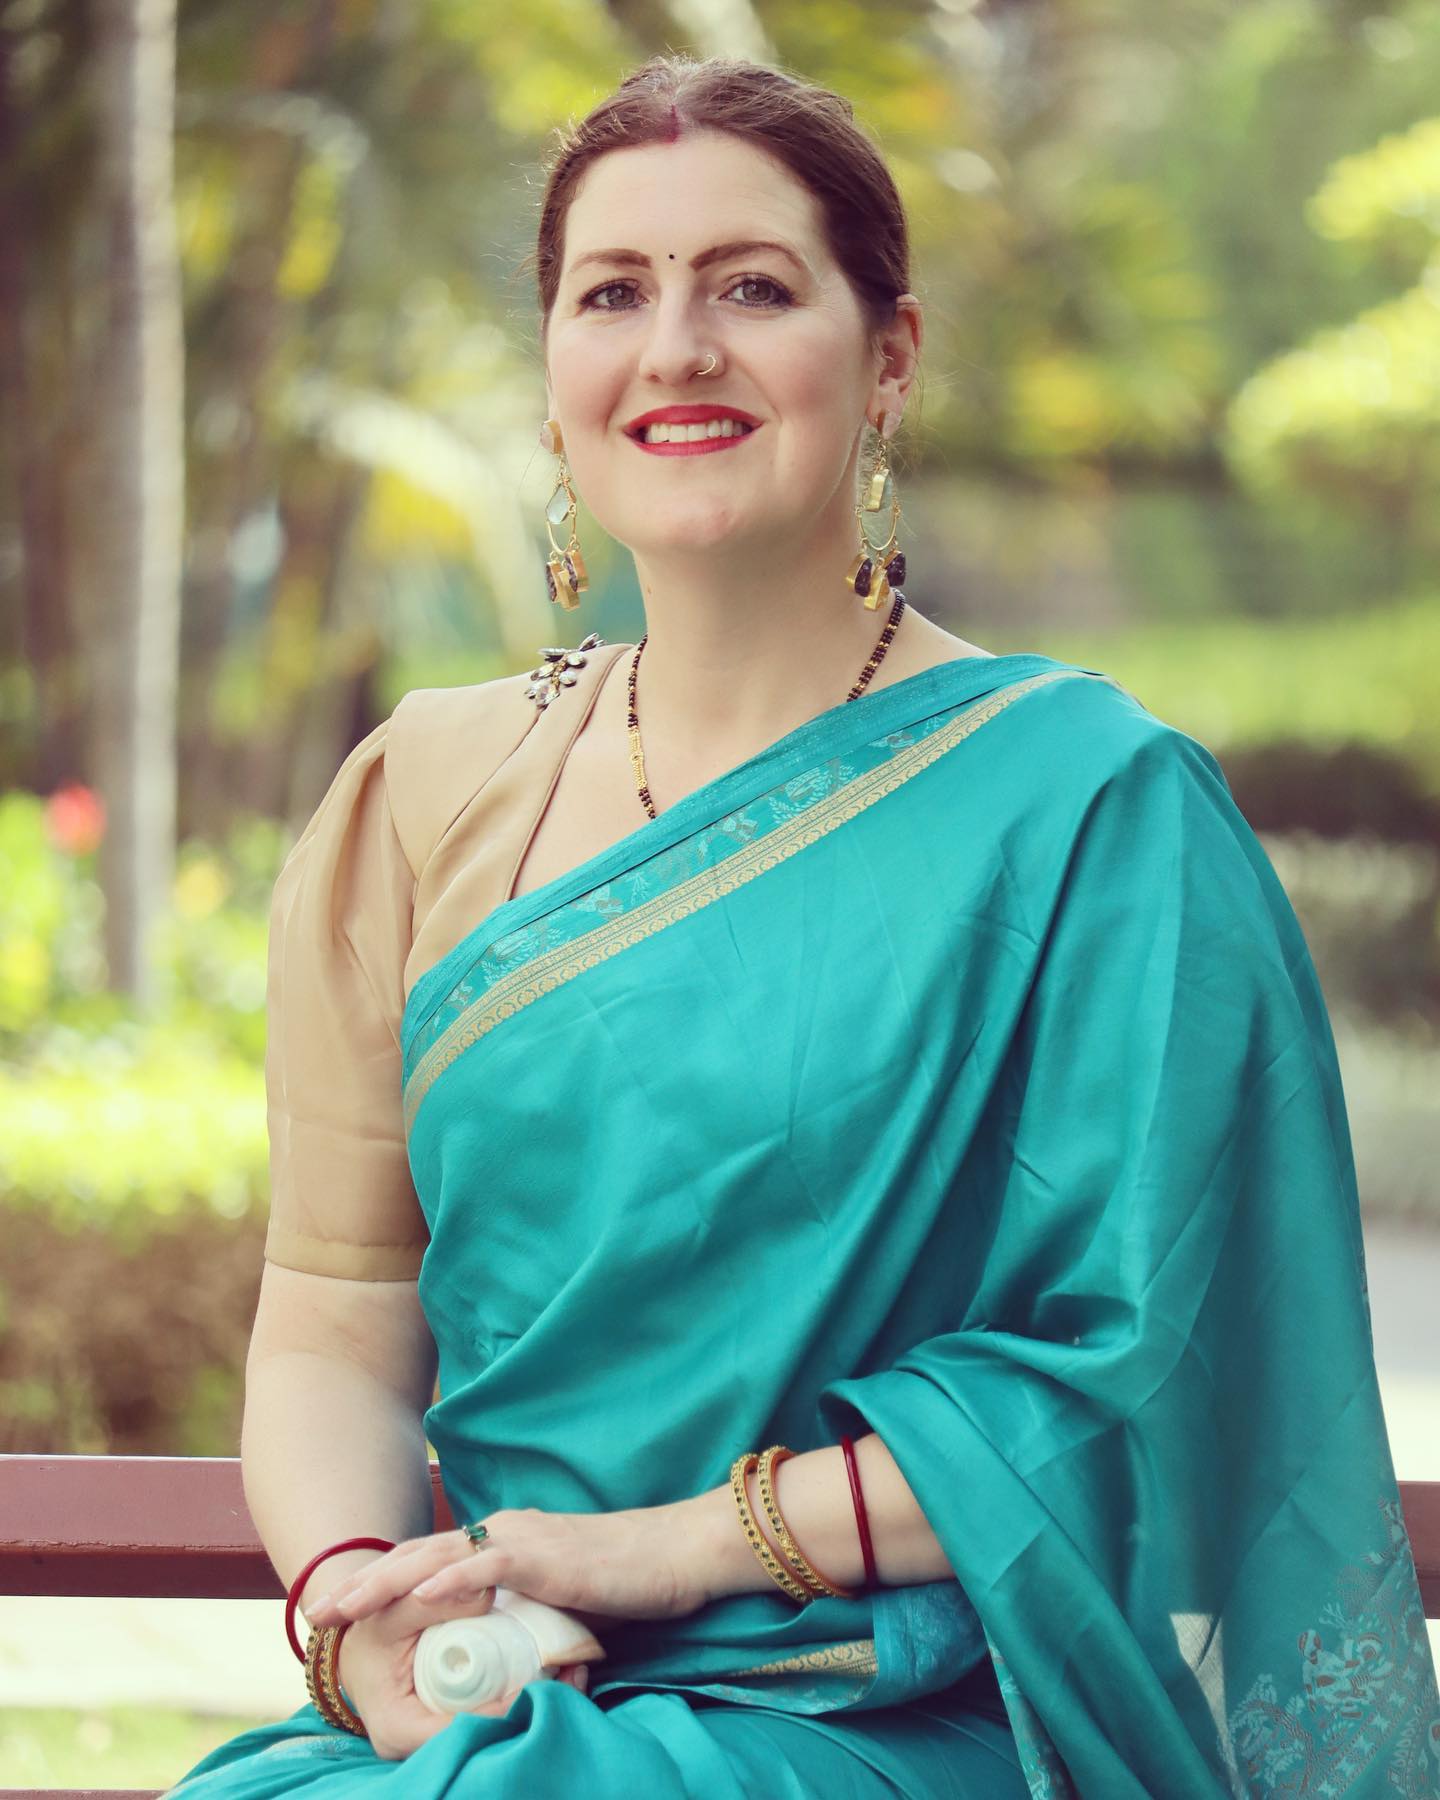 الشتات الهندي | جيسيكا كومار | العالمية الهندية